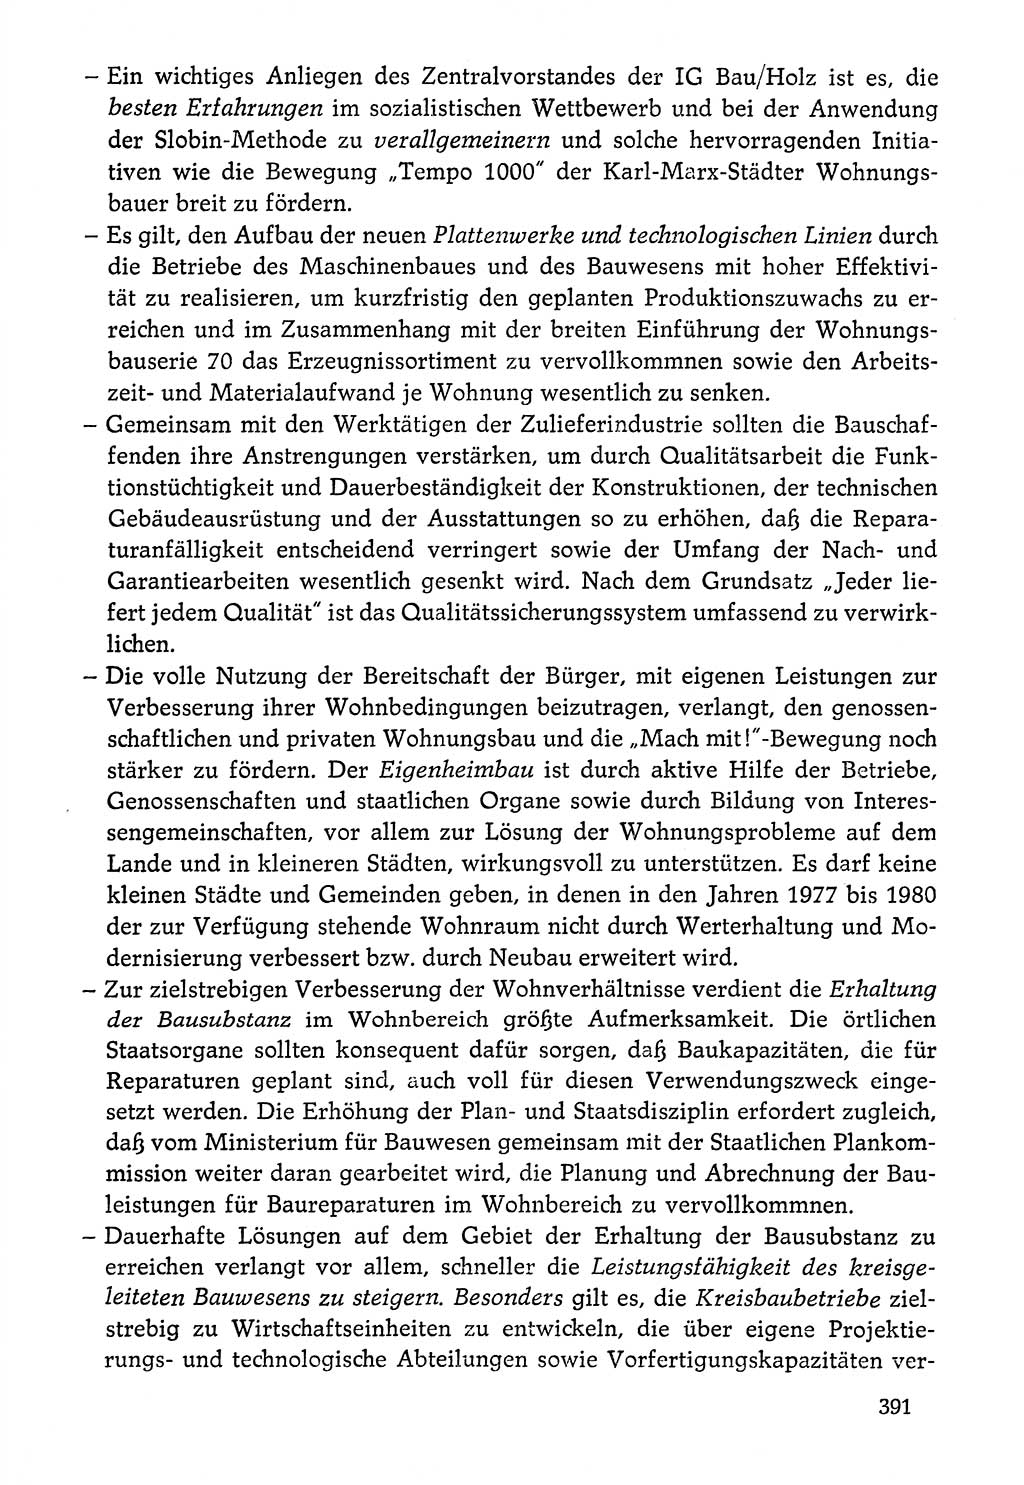 Dokumente der Sozialistischen Einheitspartei Deutschlands (SED) [Deutsche Demokratische Republik (DDR)] 1976-1977, Seite 391 (Dok. SED DDR 1976-1977, S. 391)